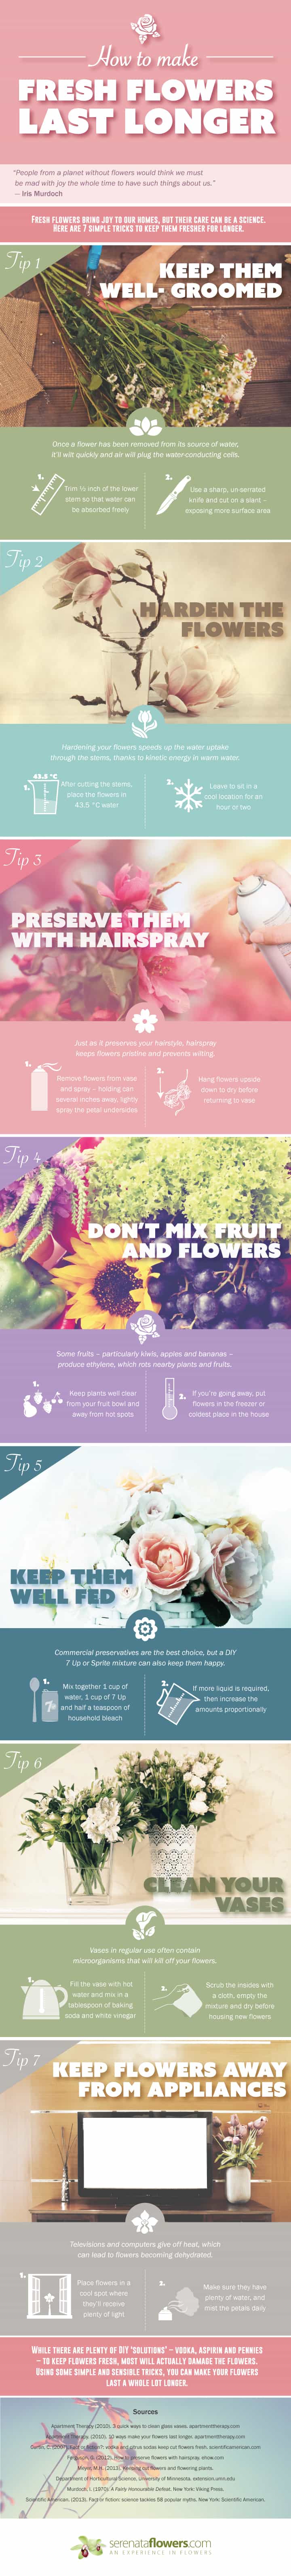 How to make fresh flowers last longer